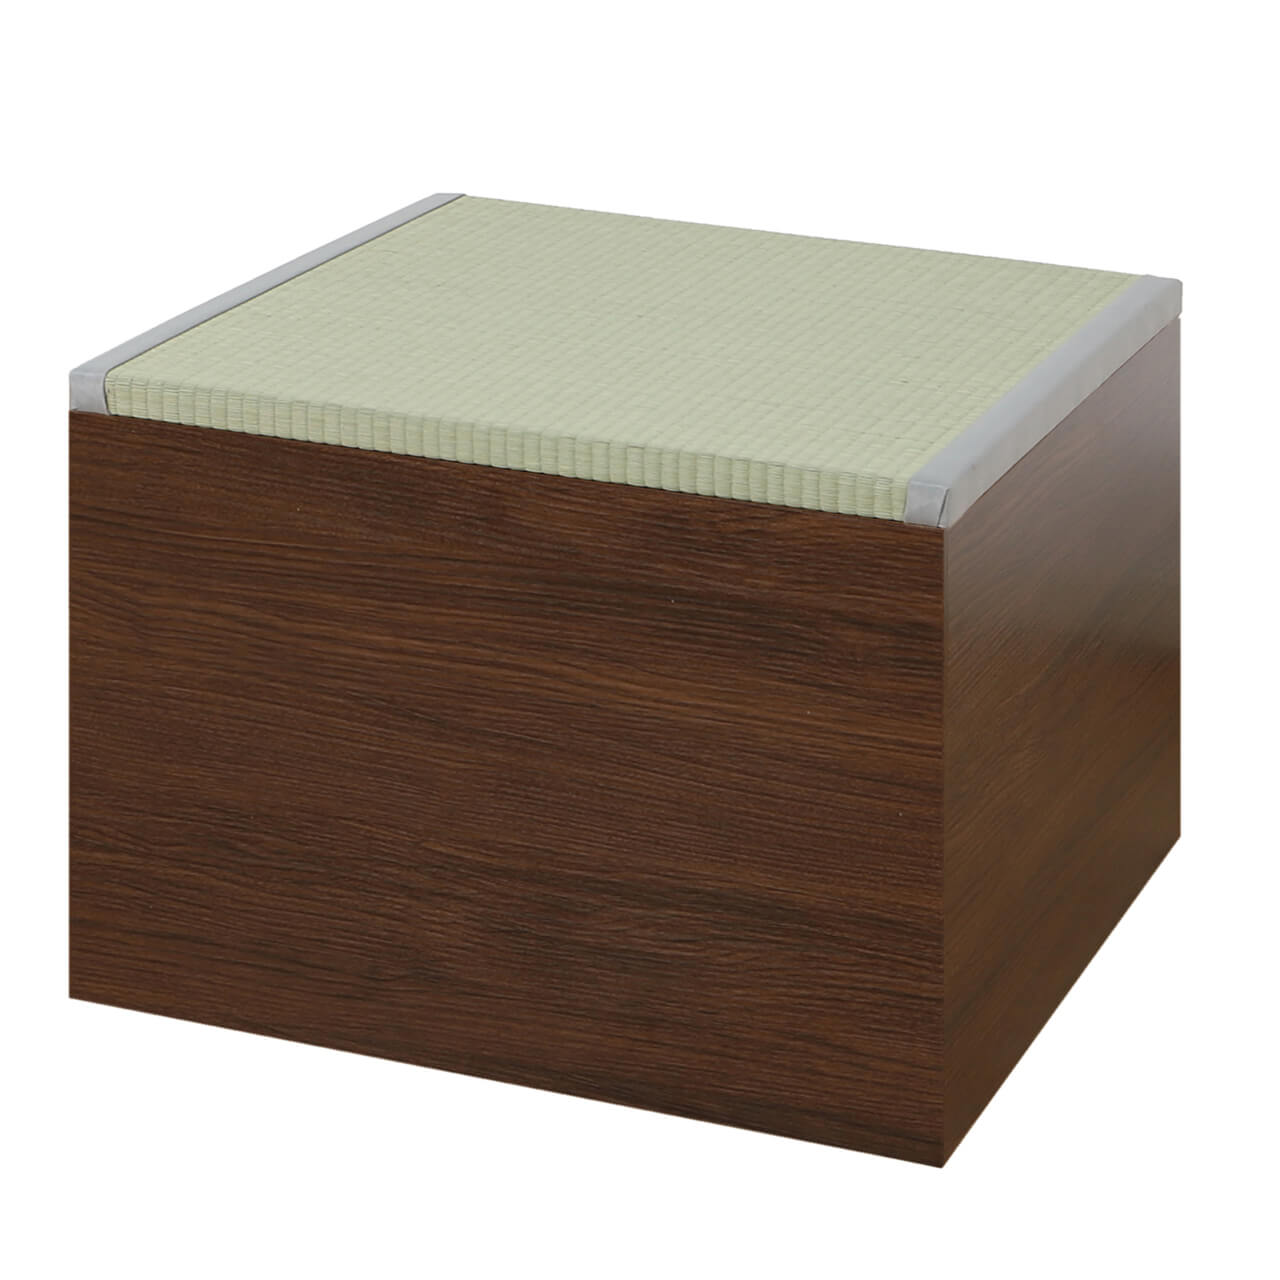 畳収納ボックス ハイタイプ 約60×60×43cm 日本製 い草 畳ボックス 小上がり畳 畳スツール...